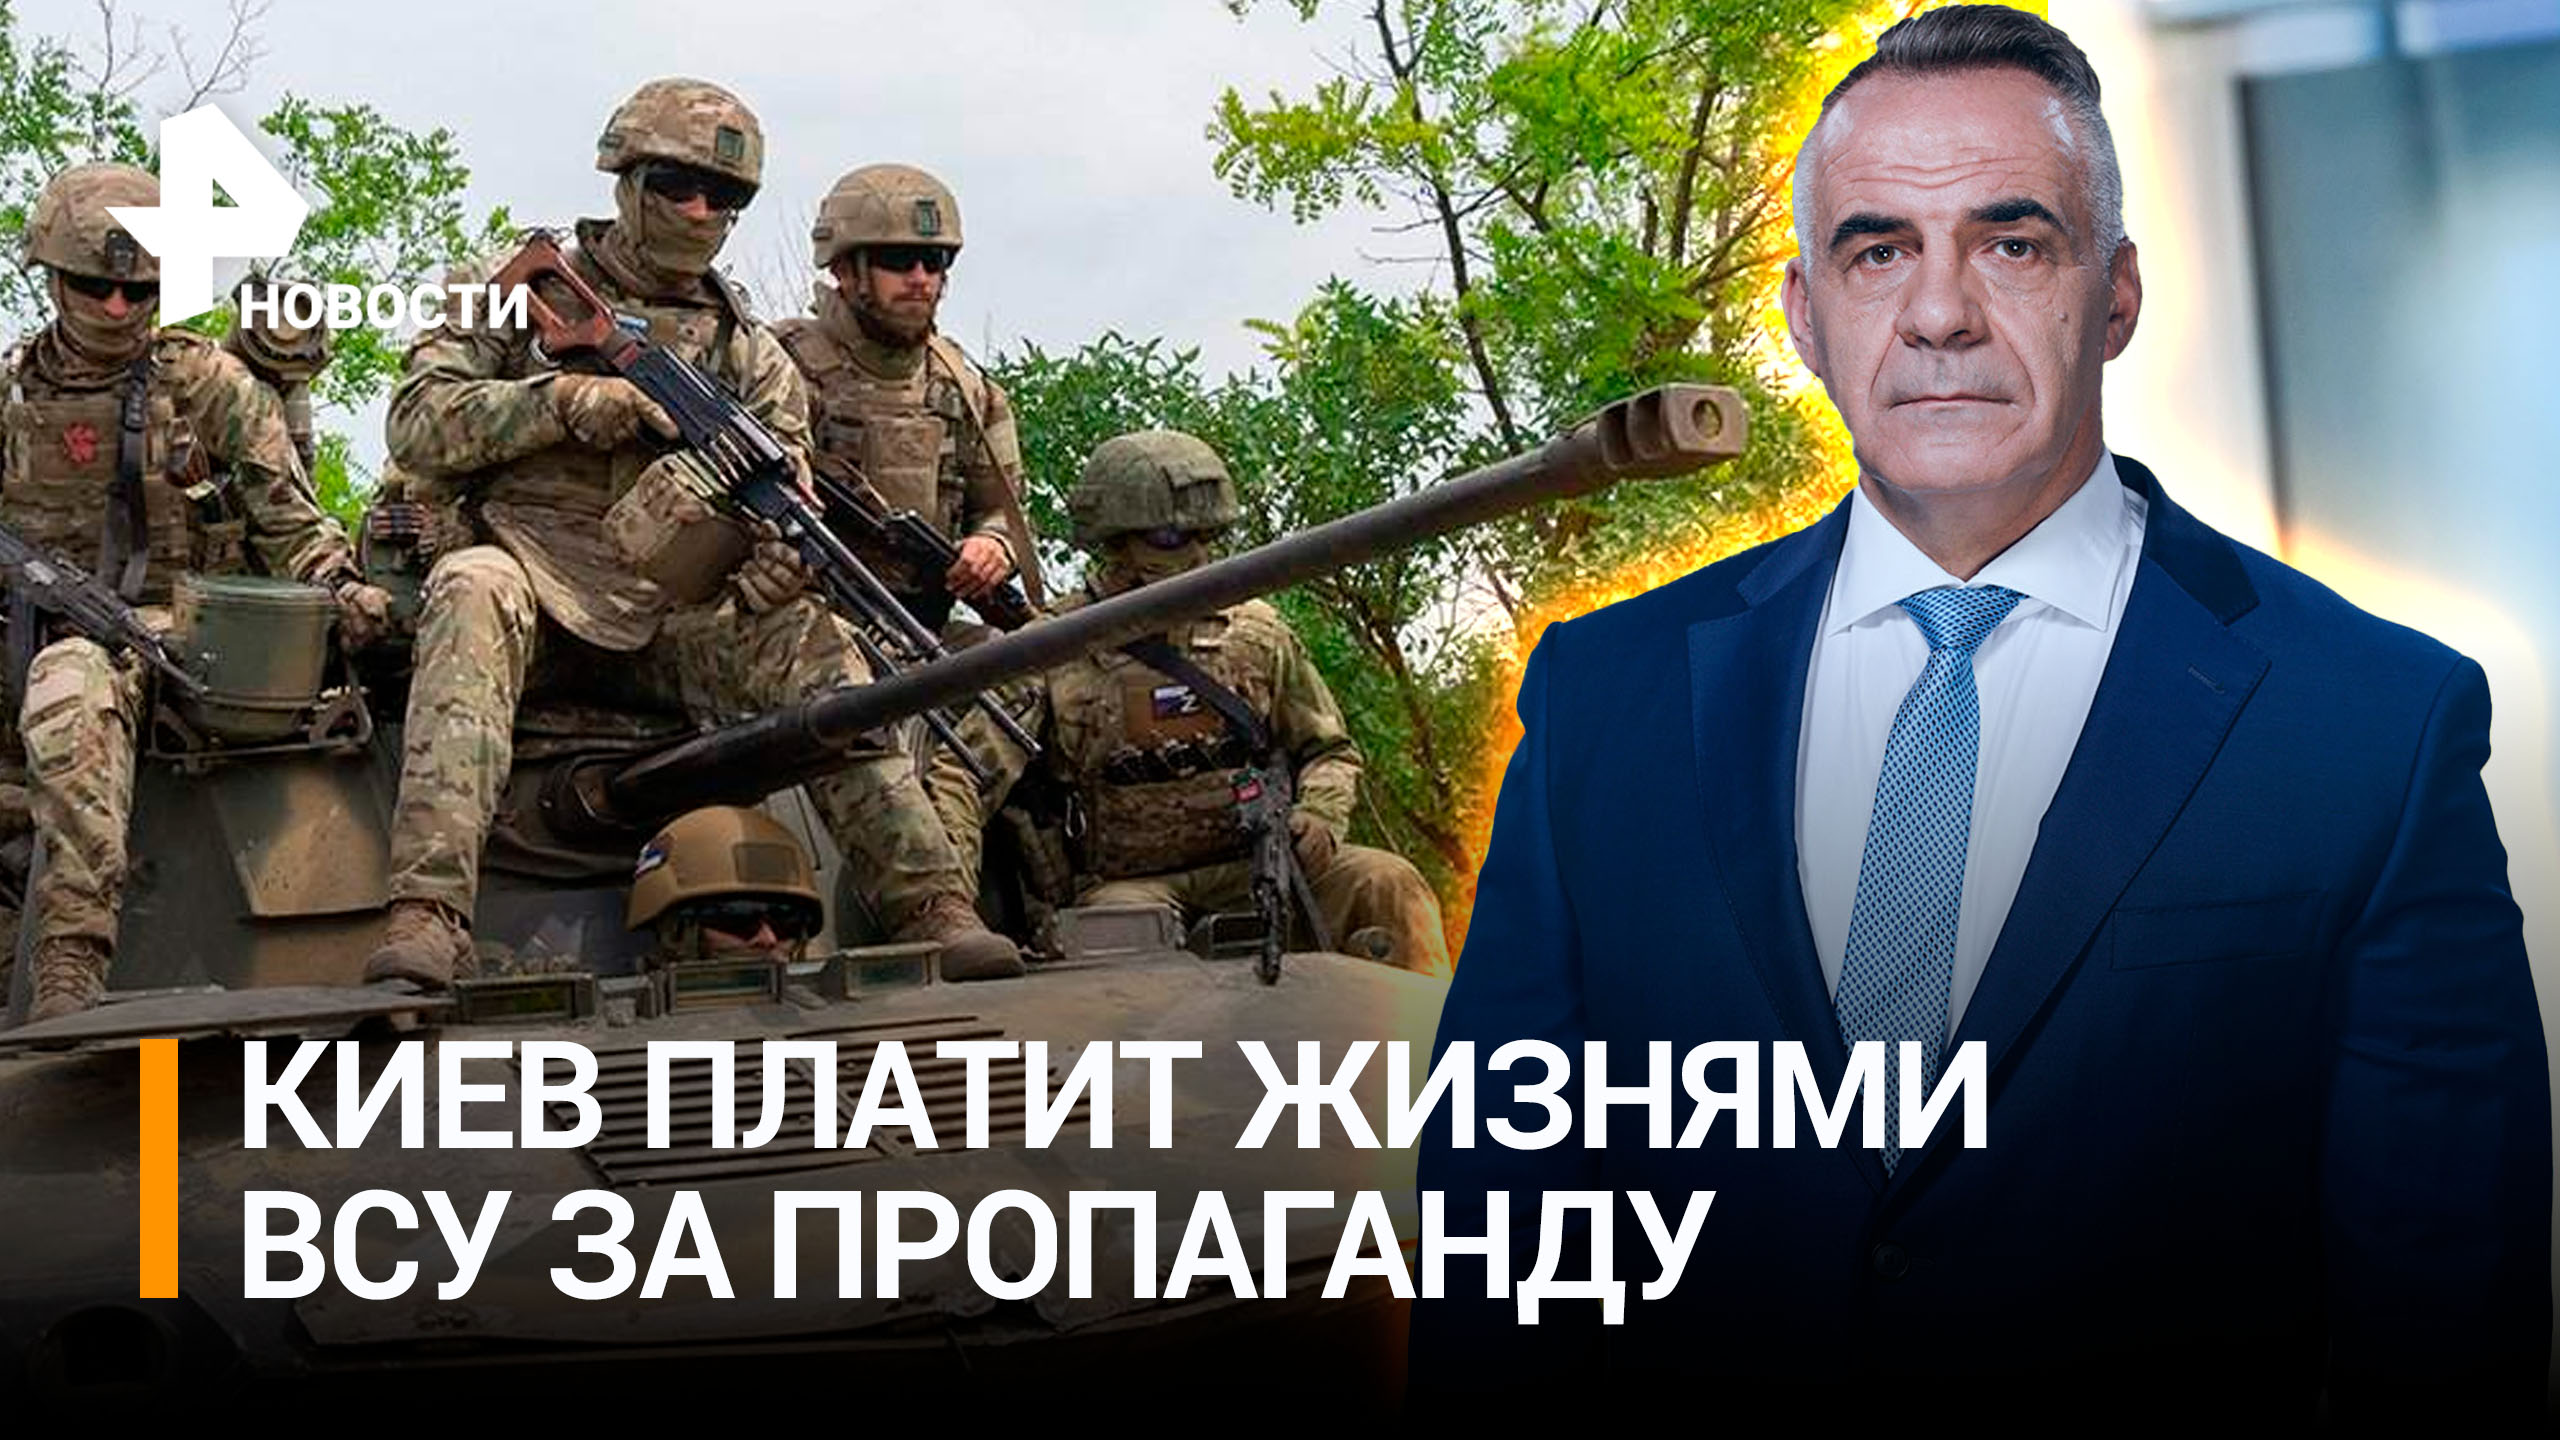 Поля усеяны трупами: Киев платит за мнимую победу жизнями своих солдат / ИТОГИ с Петром Марченко